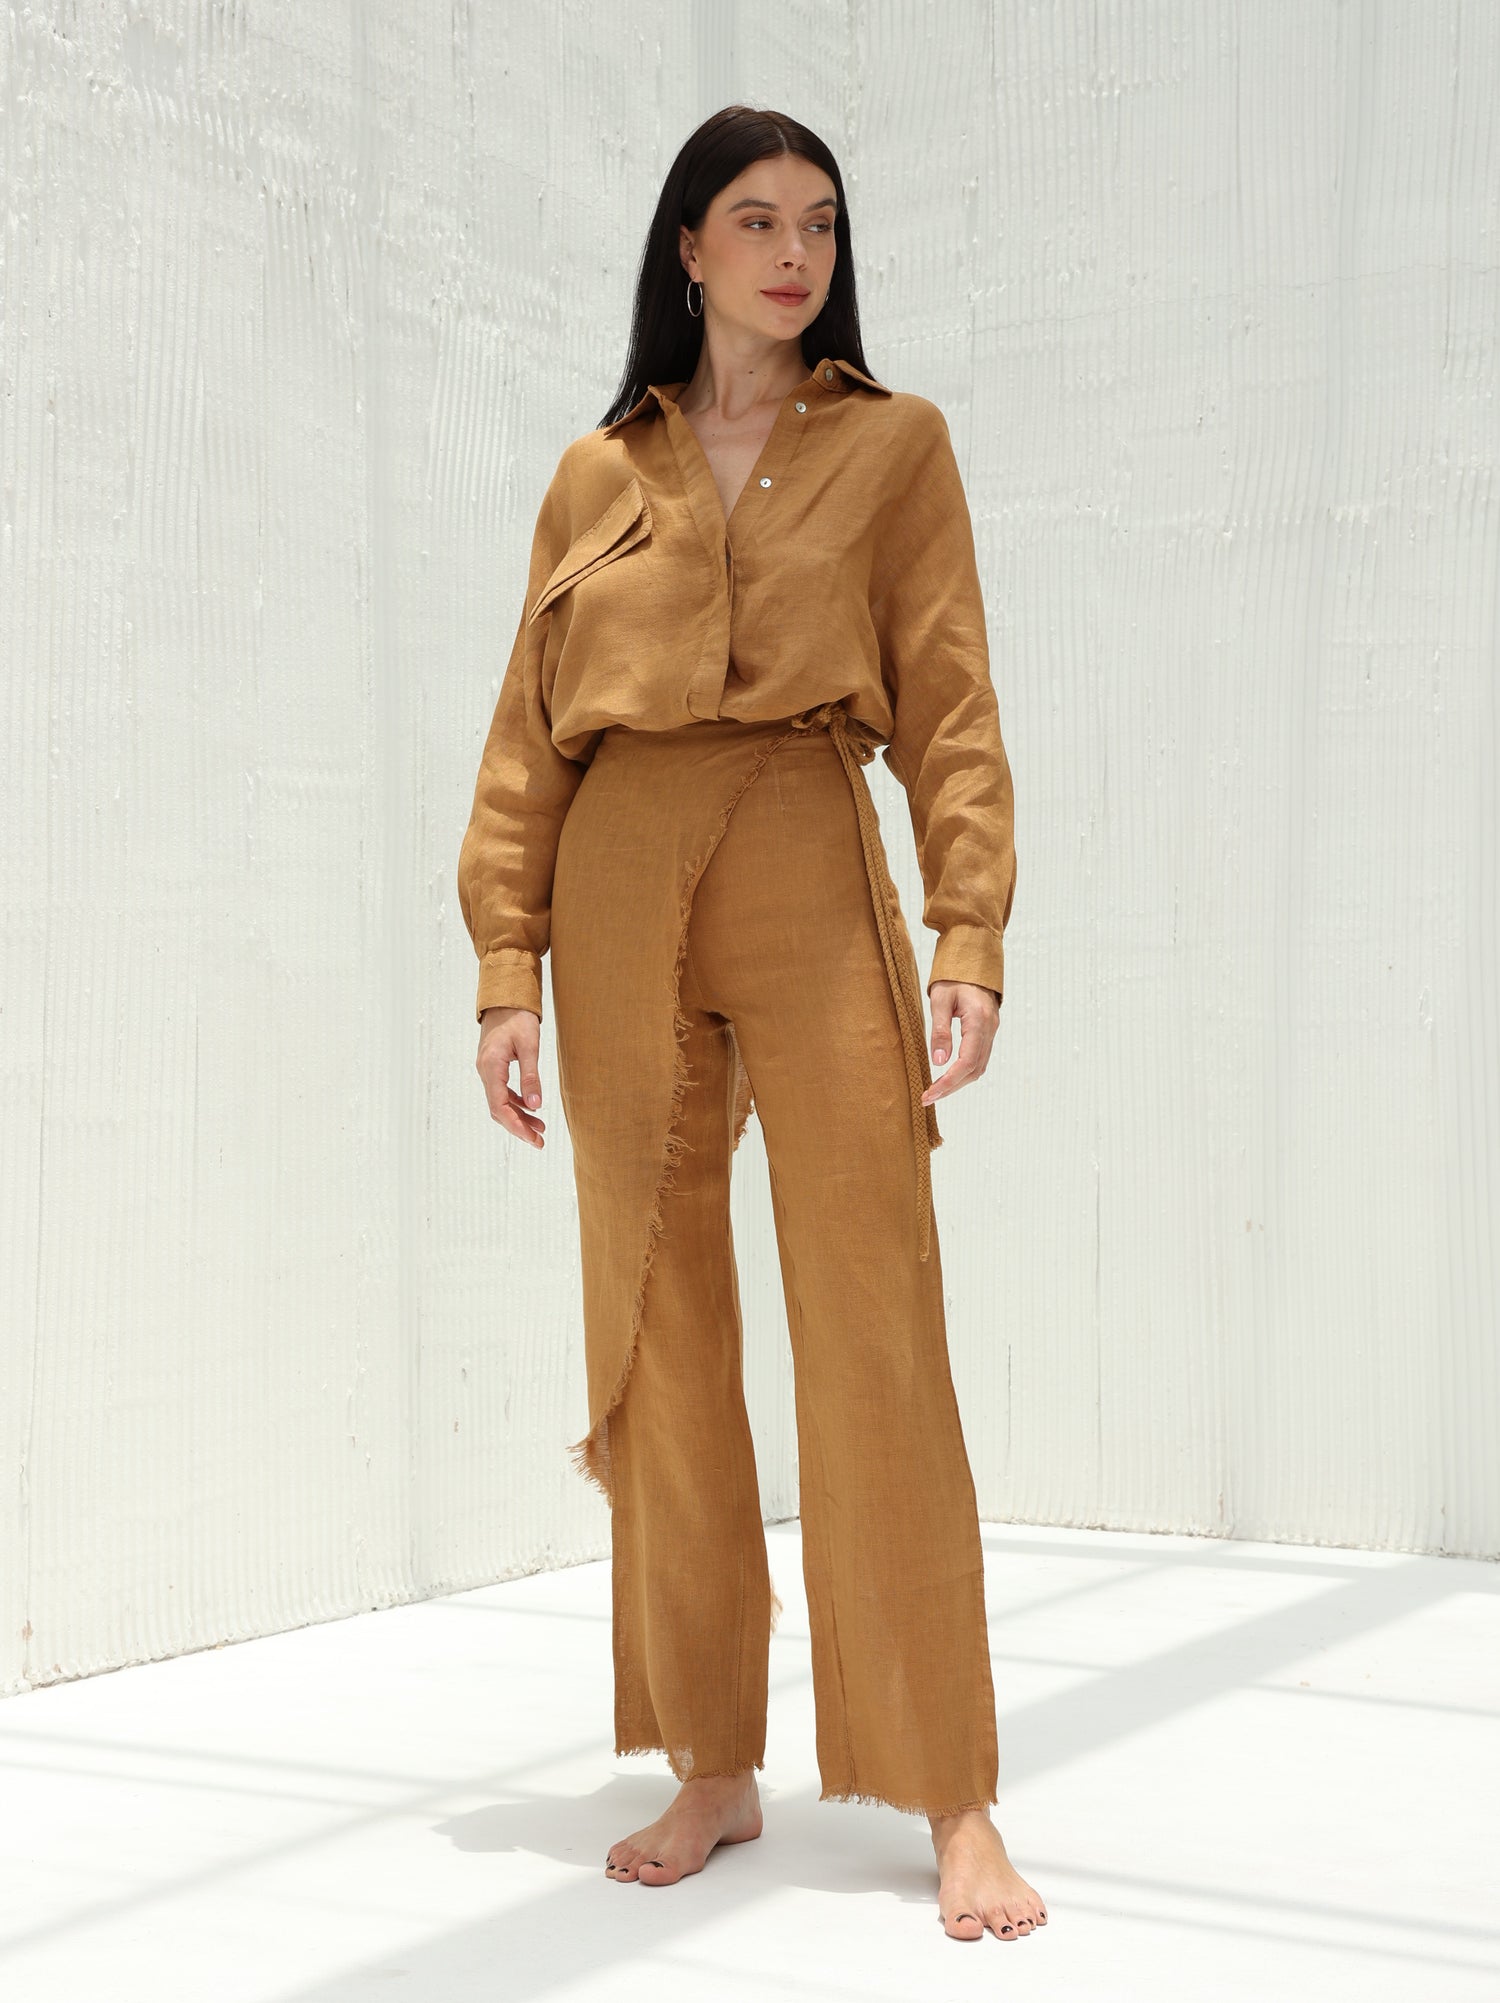 Lia Pure Linen Wrap Skirt Pants by G Linen  - Acorn  - Coord set